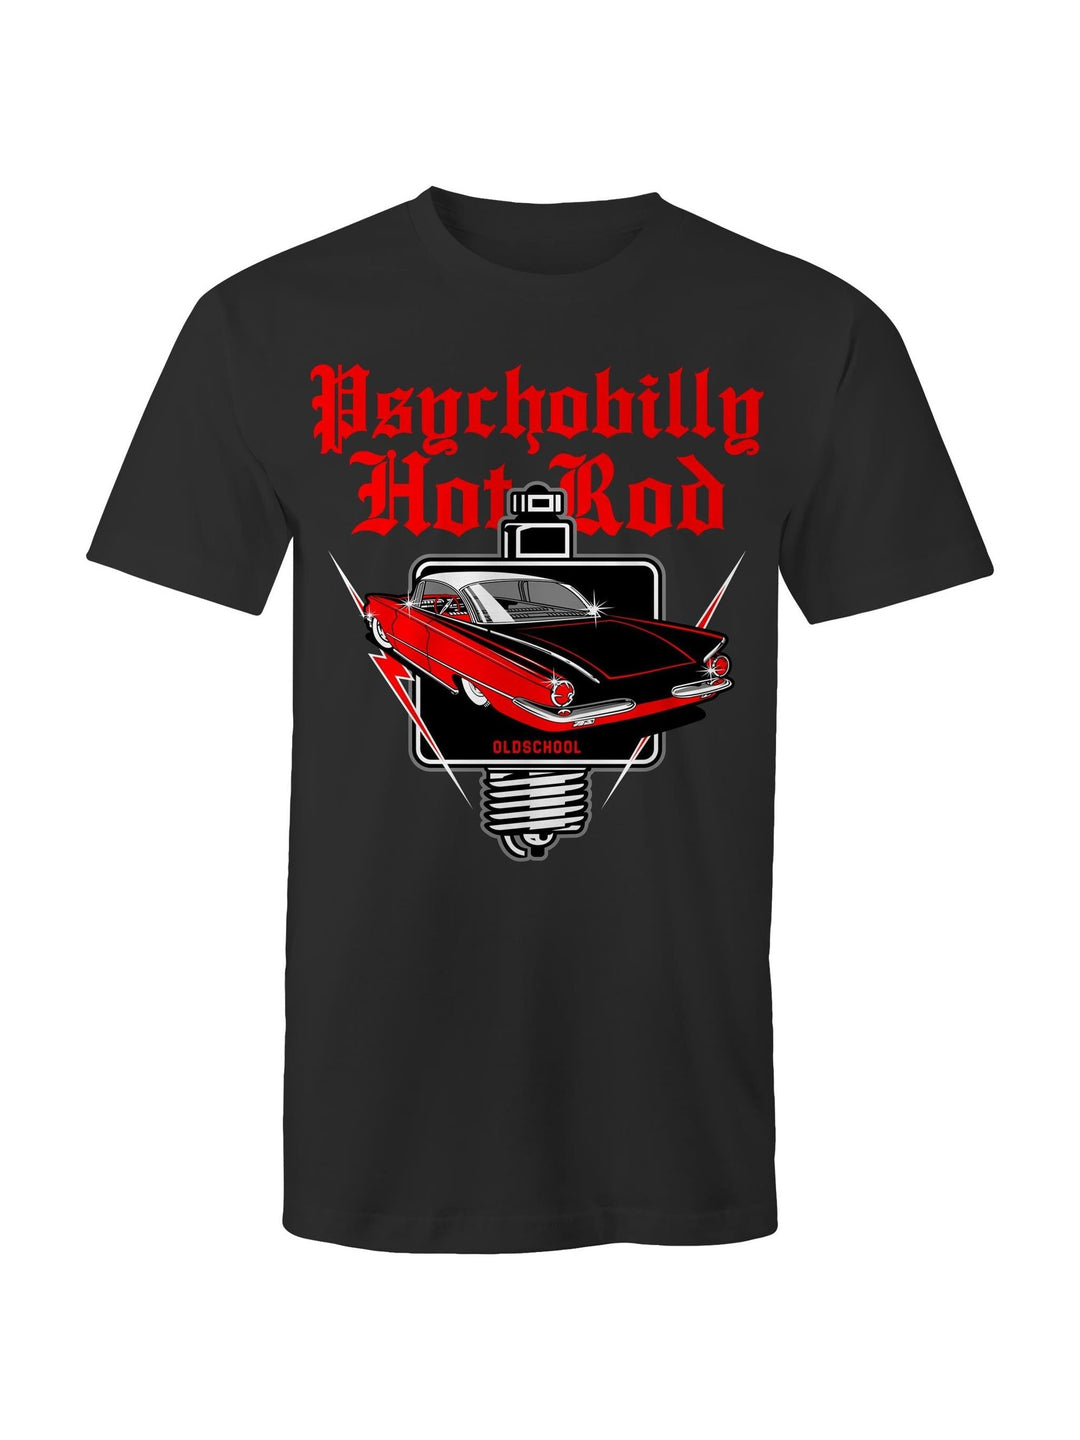 Psychobilly Hotrod - Mens T-Shirt